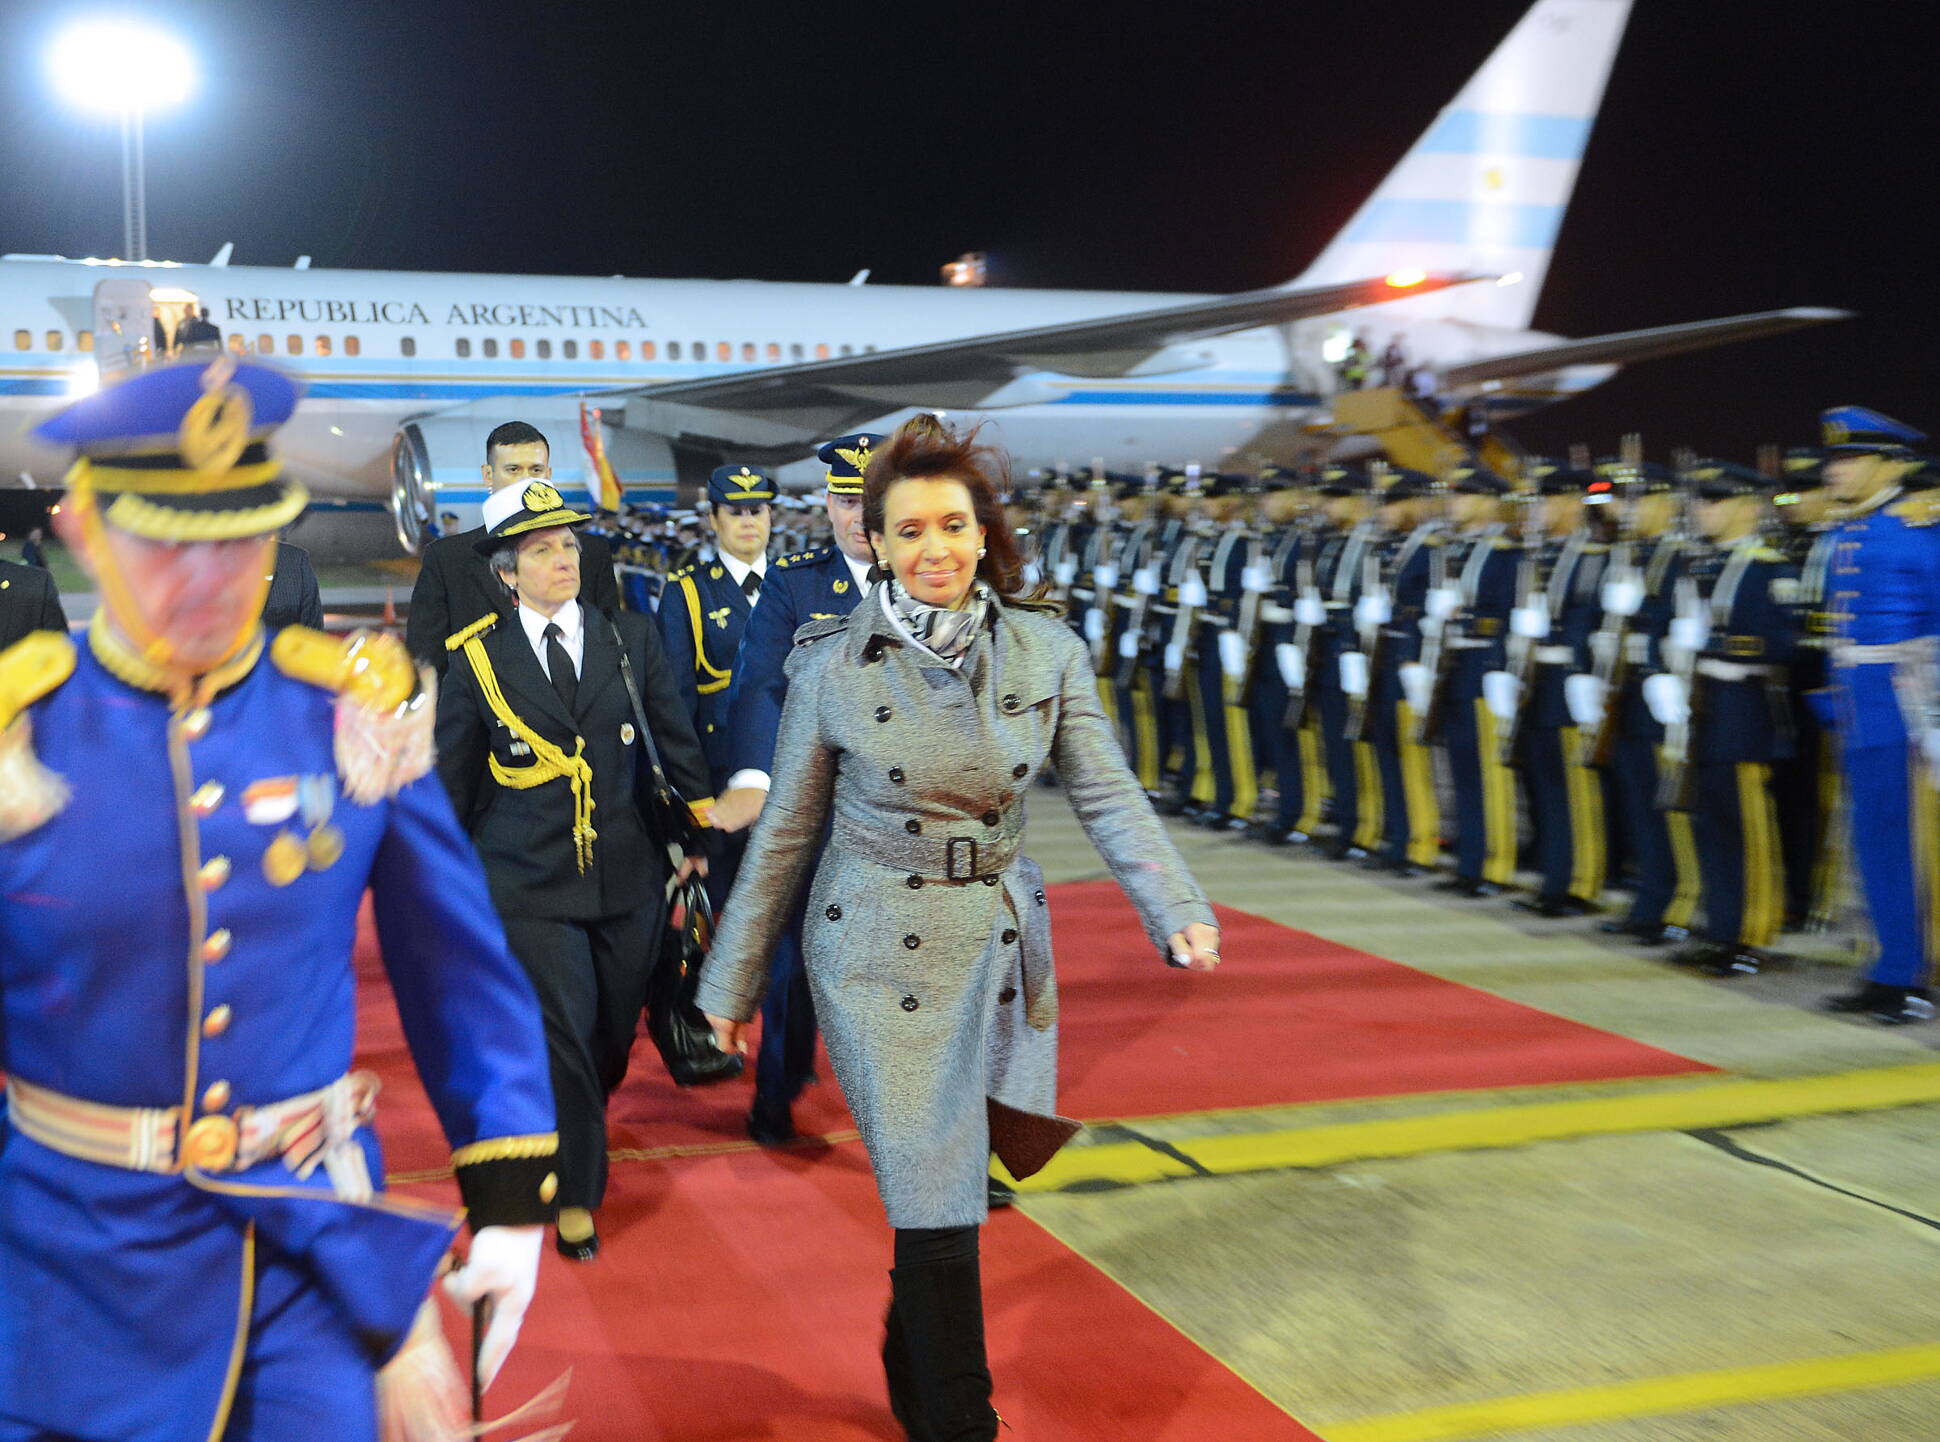 La Presidenta arribó a Paraguay en visita oficial